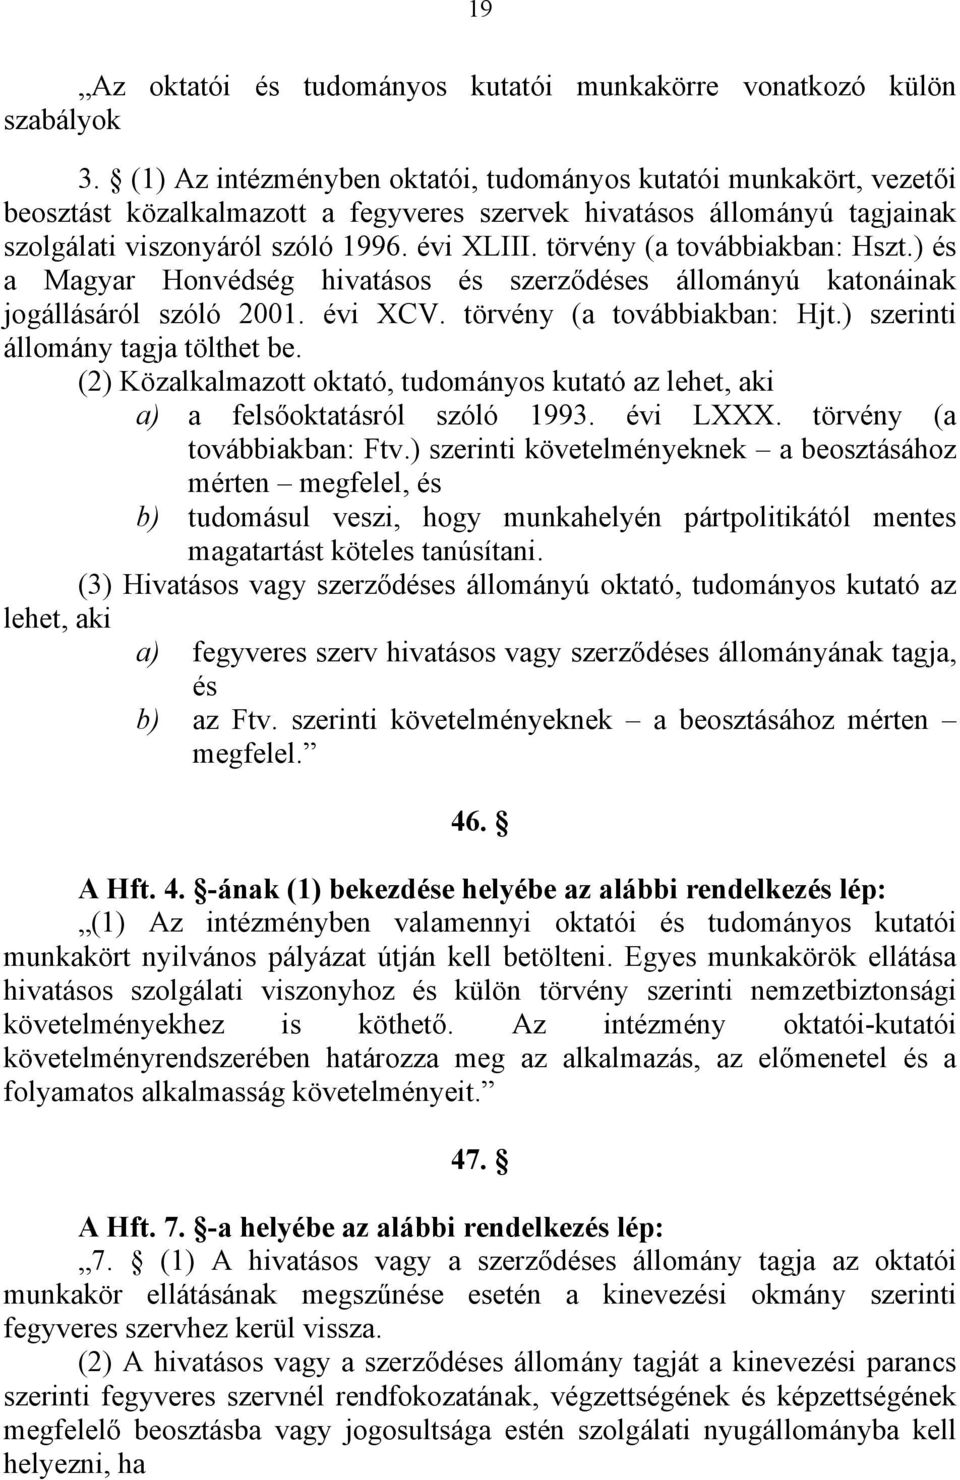 törvény (a továbbiakban: Hszt.) és a Magyar Honvédség hivatásos és szerződéses állományú katonáinak jogállásáról szóló 2001. évi XCV. törvény (a továbbiakban: Hjt.) szerinti állomány tagja tölthet be.